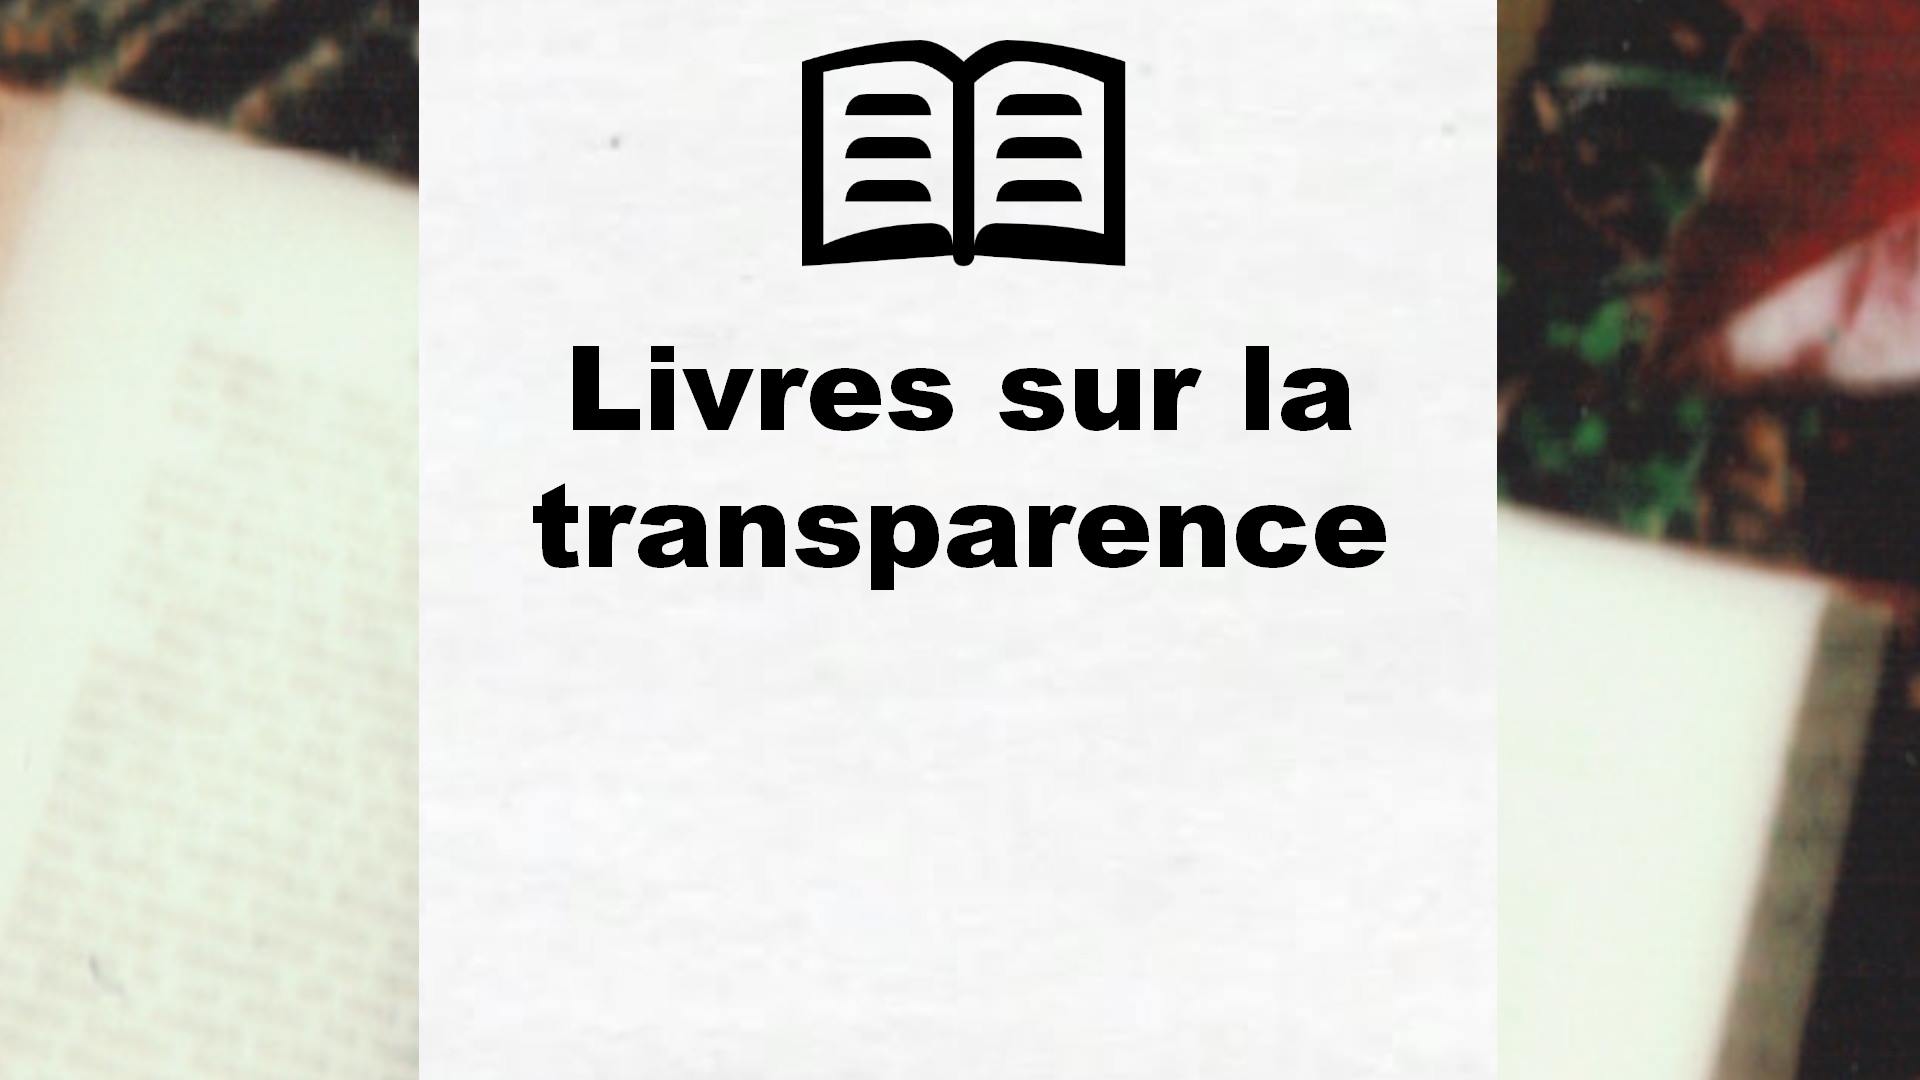 Livres sur la transparence